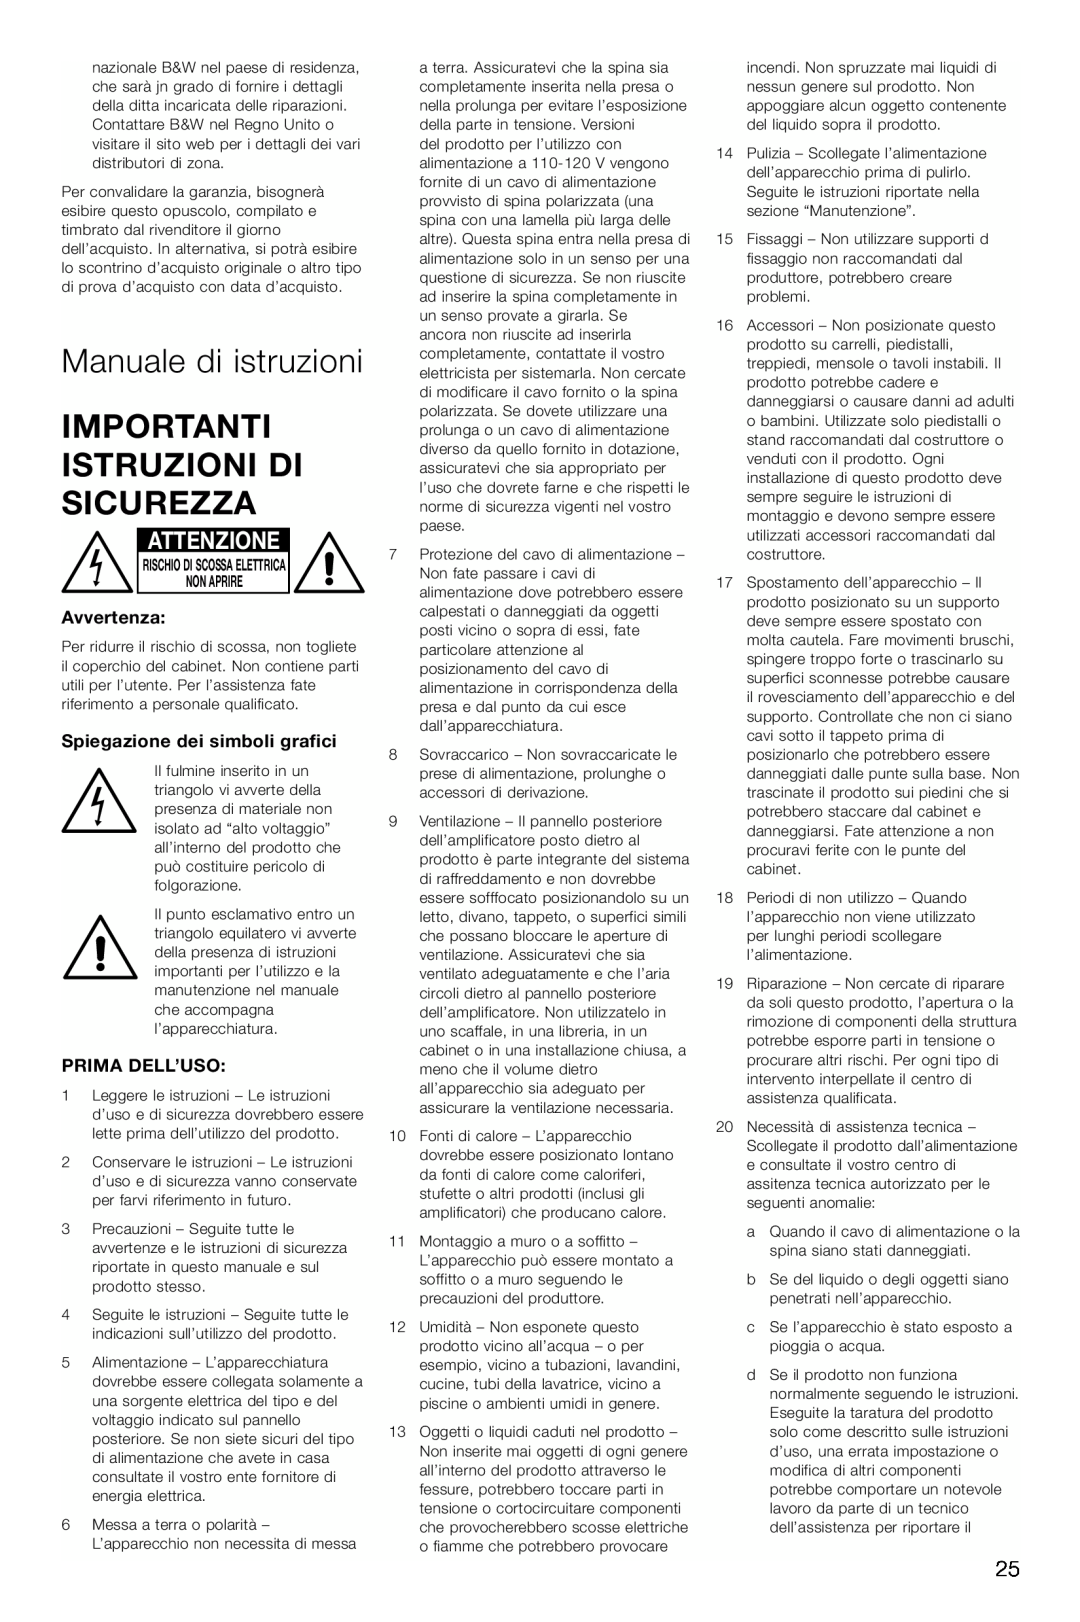 Bowers & Wilkins ASW600 Manuale di istruzioni, Importanti Istruzioni Di Sicurezza, Attenzione, Avvertenza, Prima Dell’Uso 